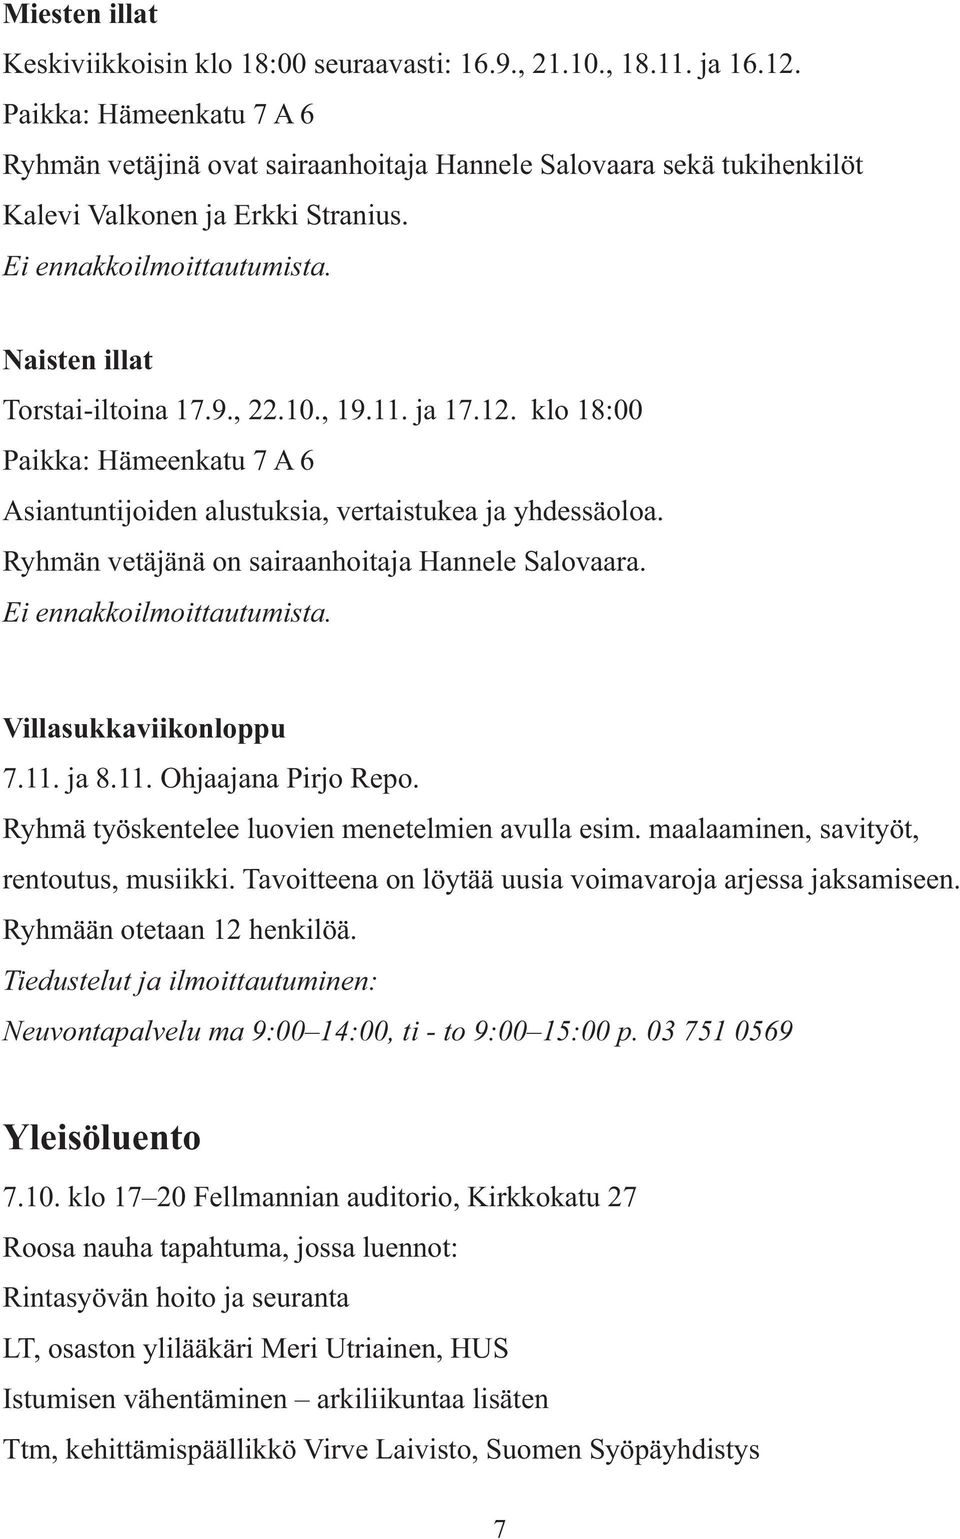 10., 19.11. ja 17.12. klo 18:00 Paikka: Hämeenkatu 7 A 6 Asiantuntijoiden alustuksia, vertaistukea ja yhdessäoloa. Ryhmän vetäjänä on sairaanhoitaja Hannele Salovaara. Ei ennakkoilmoittautumista.